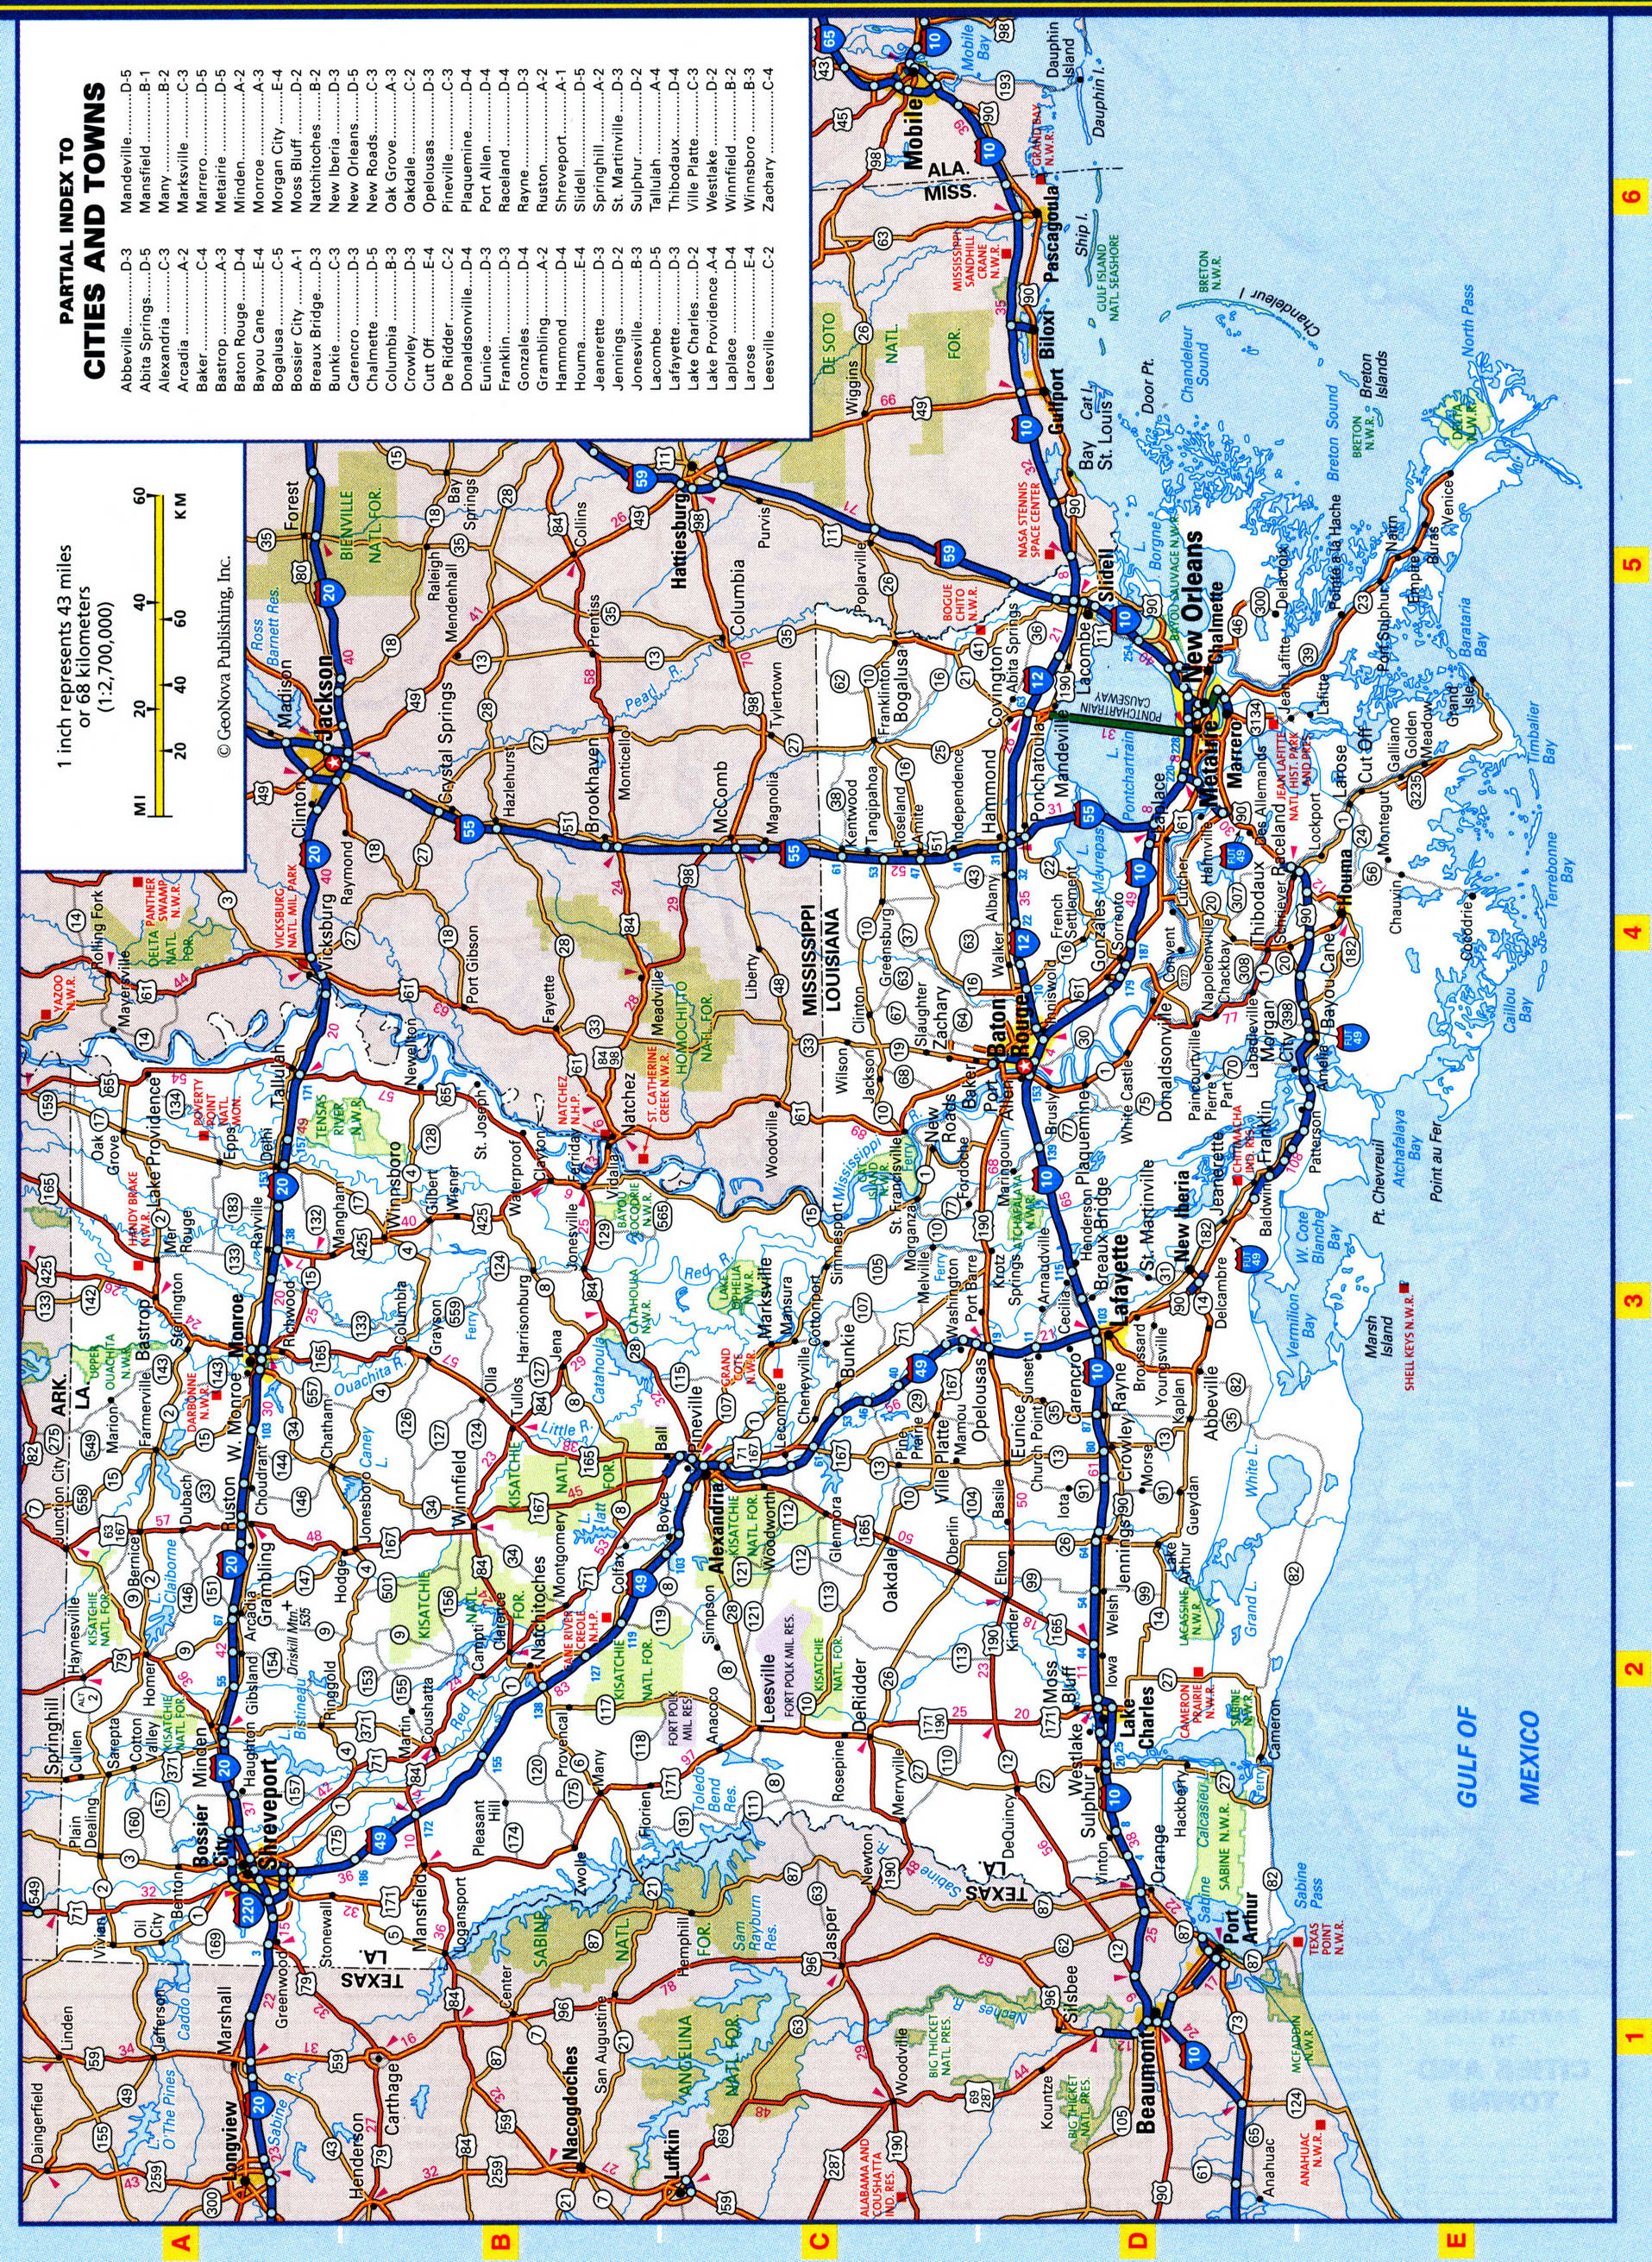 Louisiana highways map